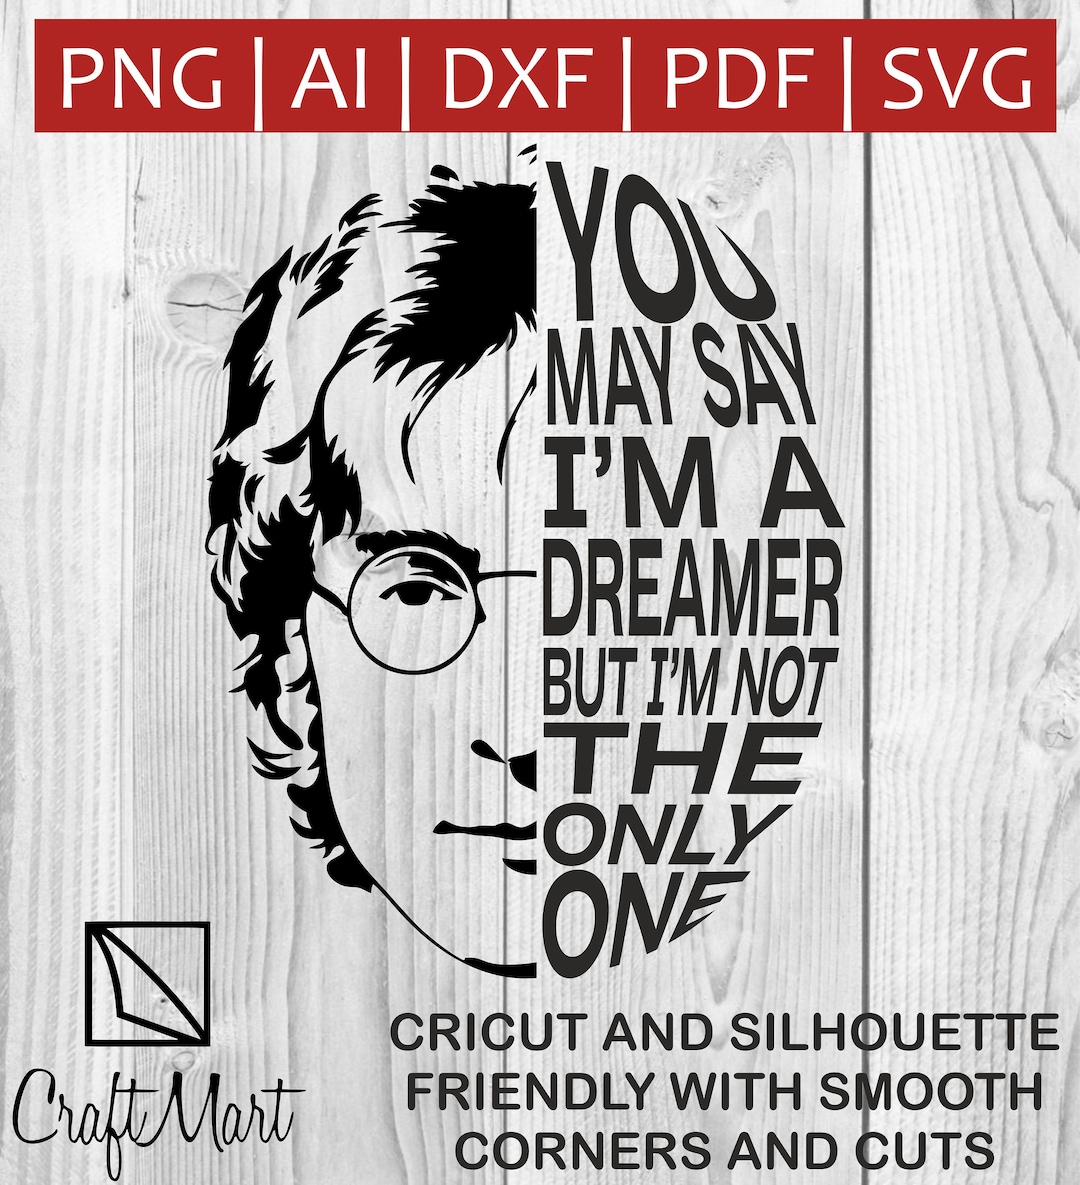 You May Say I'm A Dreamer but I'm Not the Only One Music SVG Cricut the ...